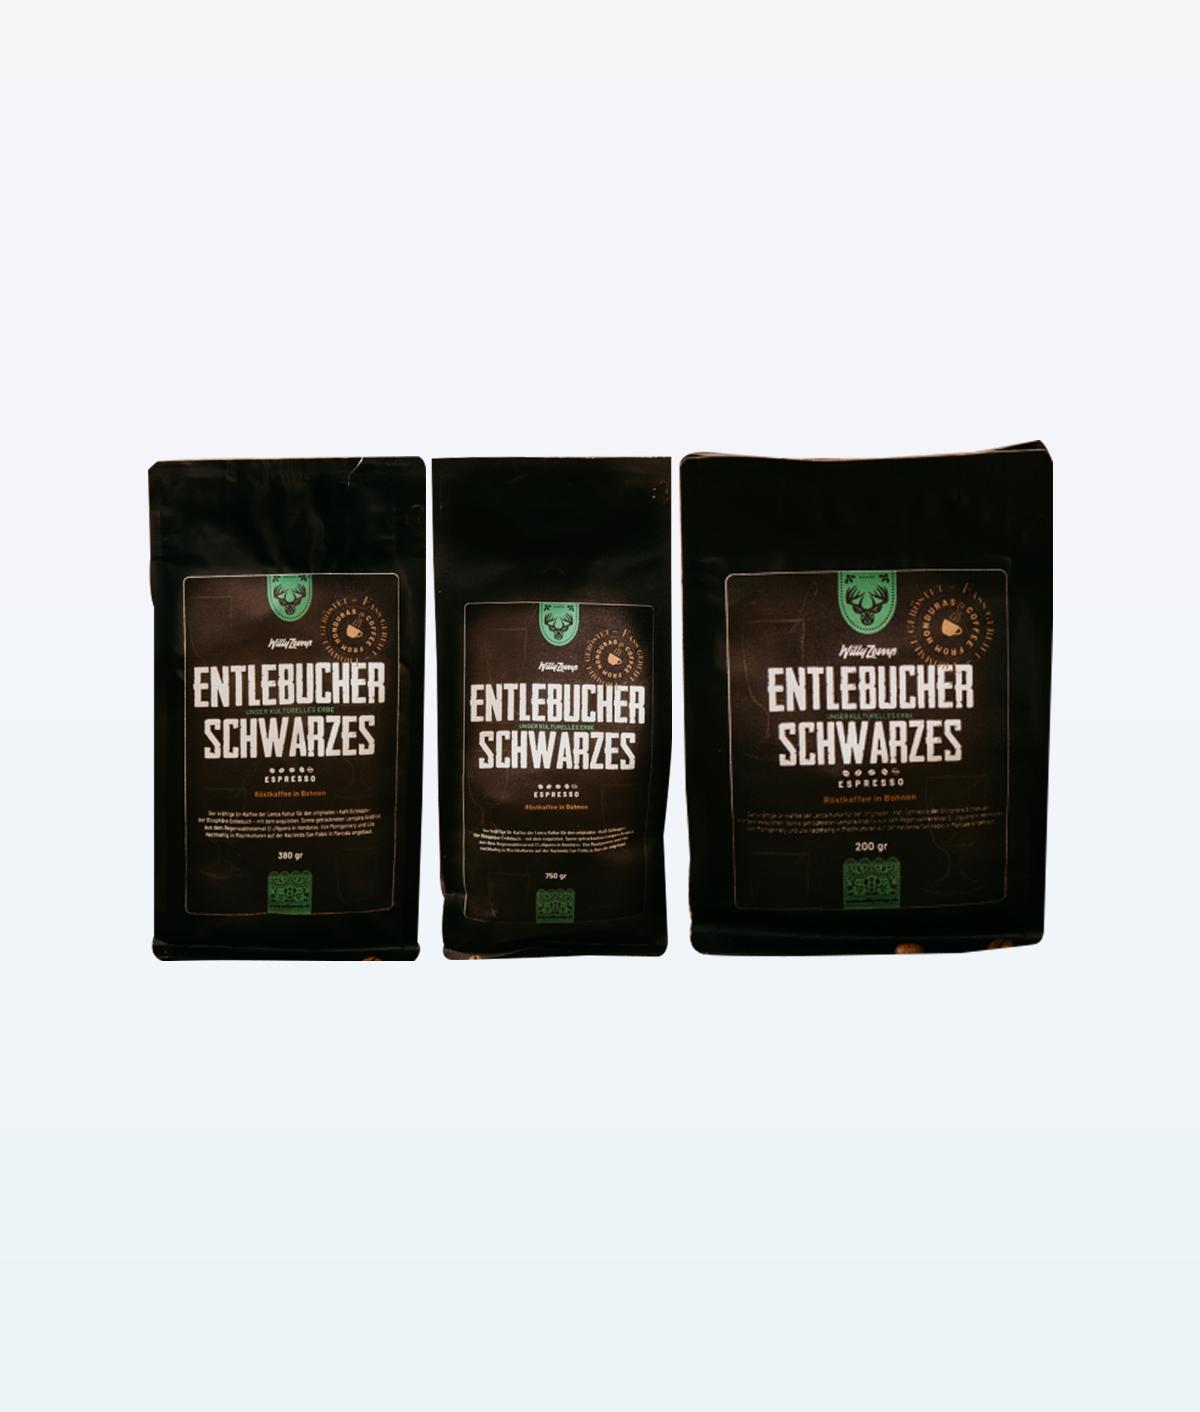 Entlebucher Schwarzes Espresso Coffee Beans